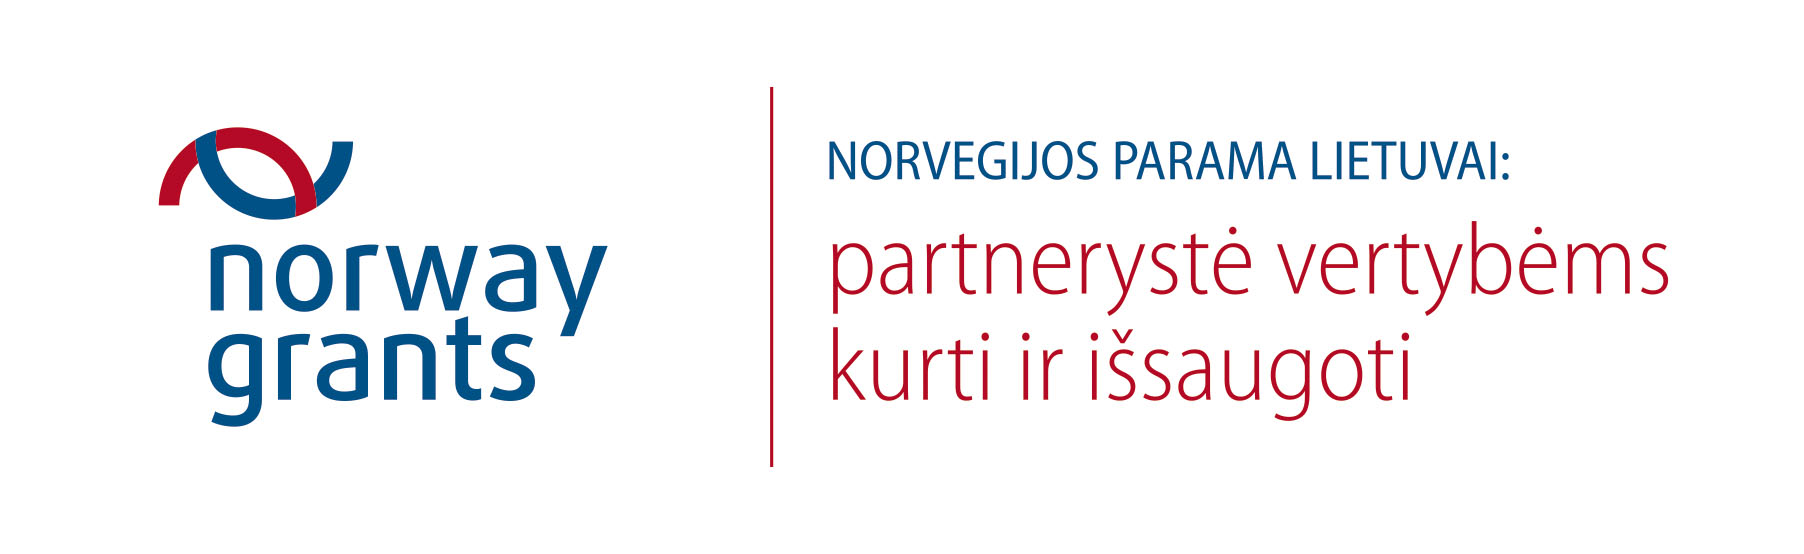 Europos ekonominės erdvės ir Norvegijos finansinių mechanizmų nacionalinis dvišalio bendradarbiavimo fondas